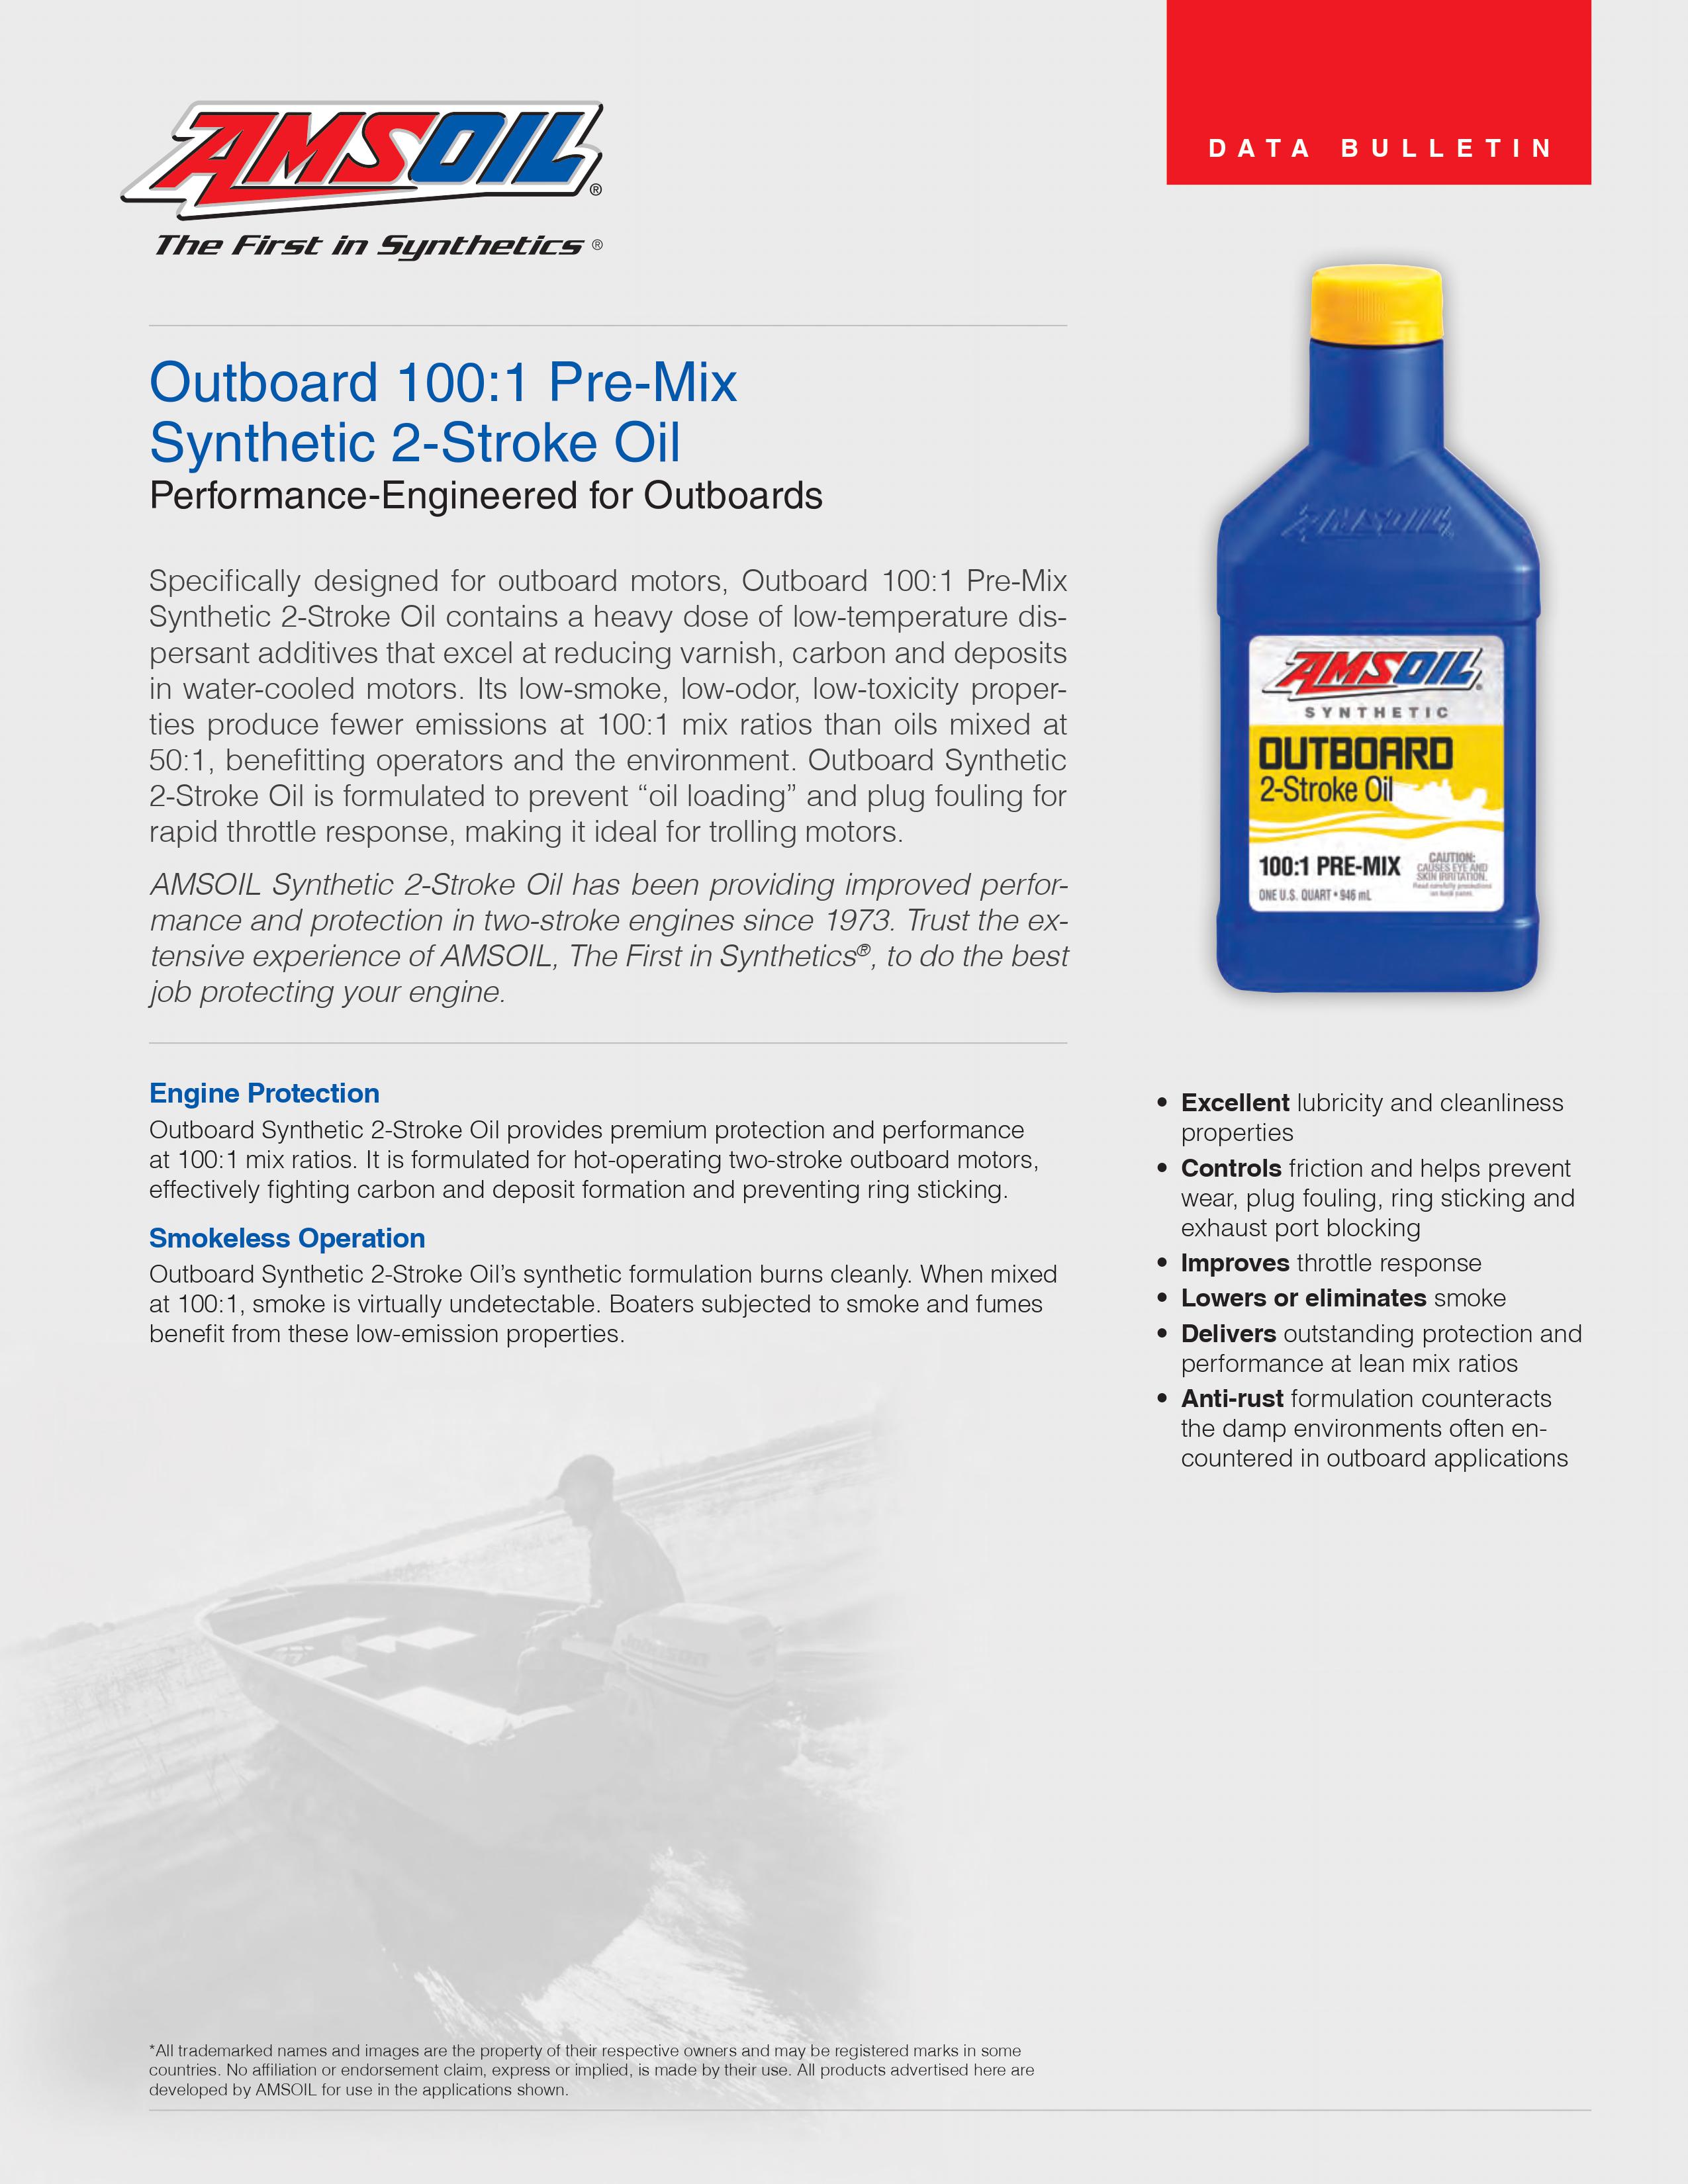 AMSOIL INC. HP Marine 2 Stroke oil, the best oil for your 2 stroke